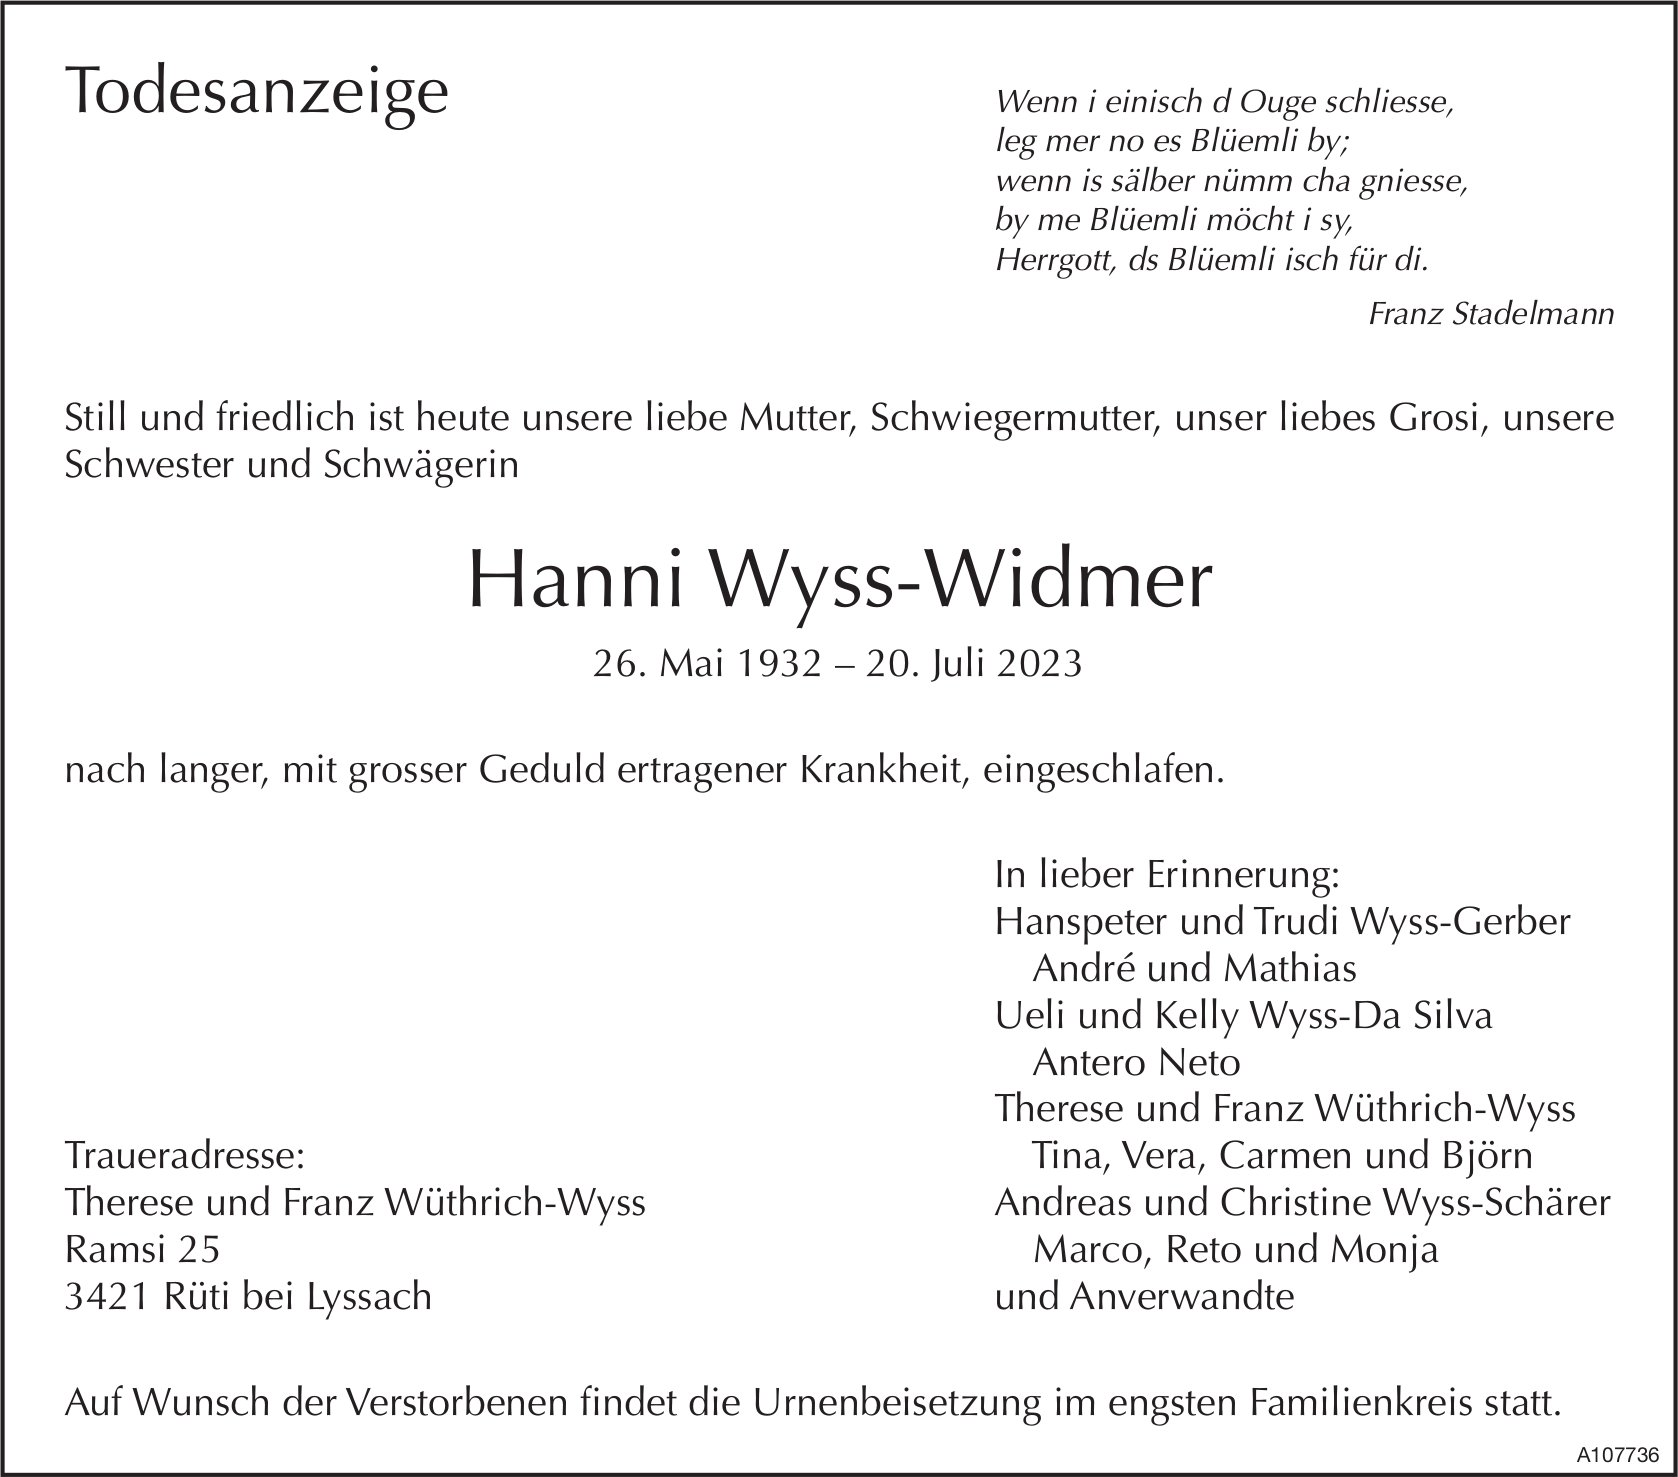 Hanni Wyss-Widmer, Juli 2023 / TA